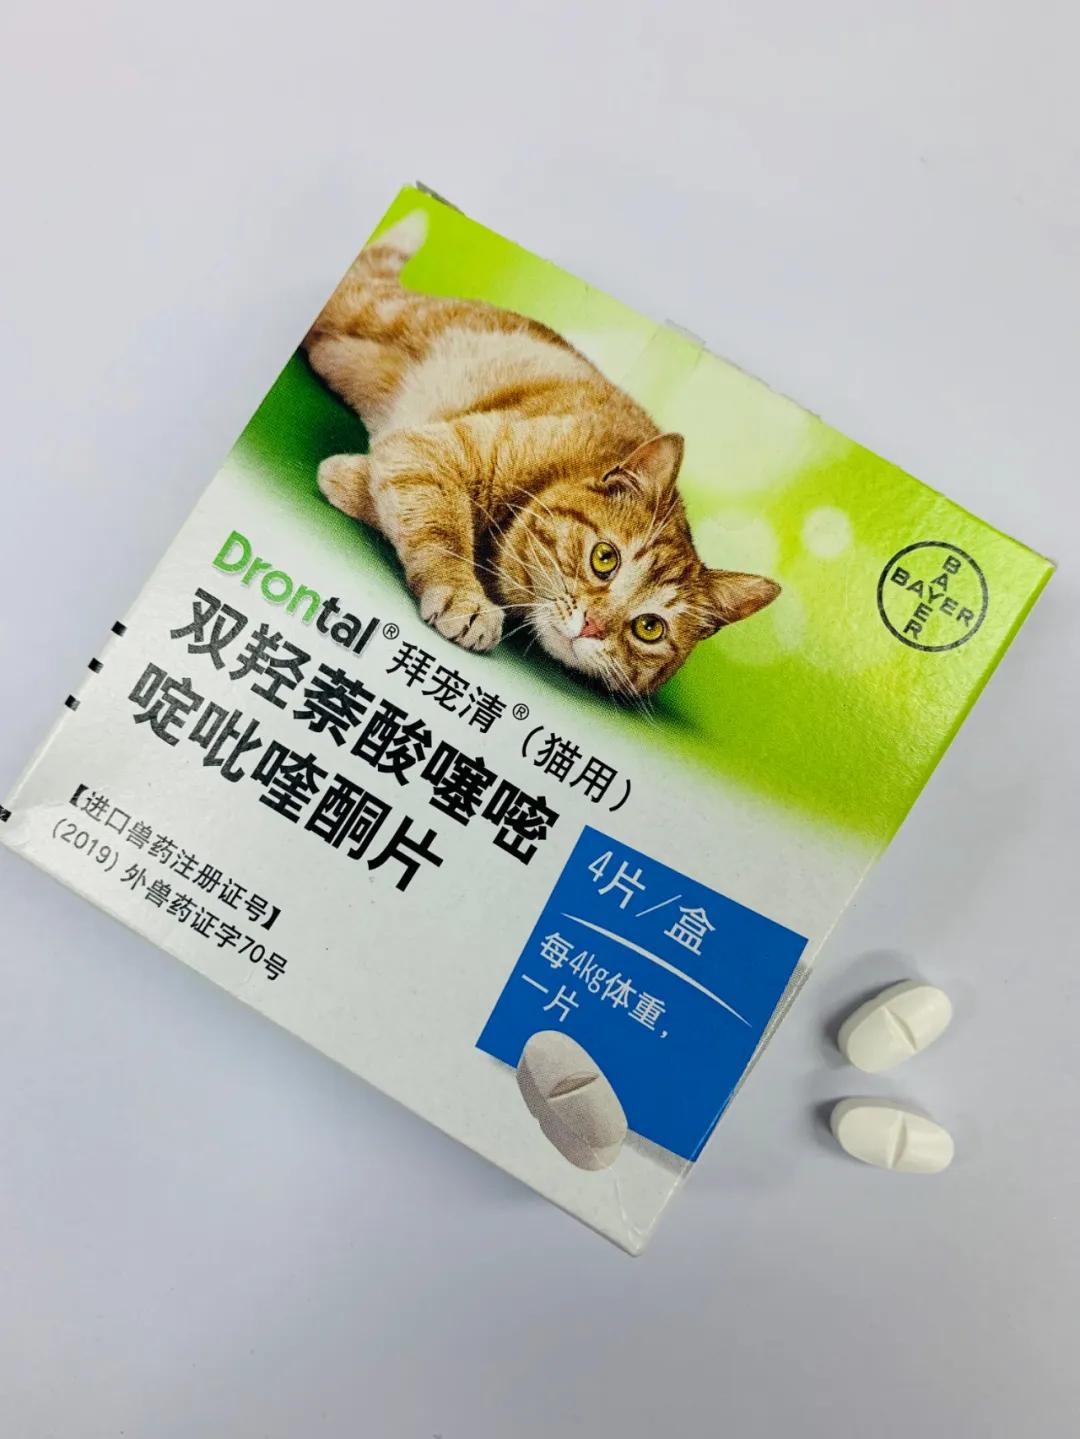 原创拜宠清猫用体内驱虫药中国版正式发布,不要再买假货了!